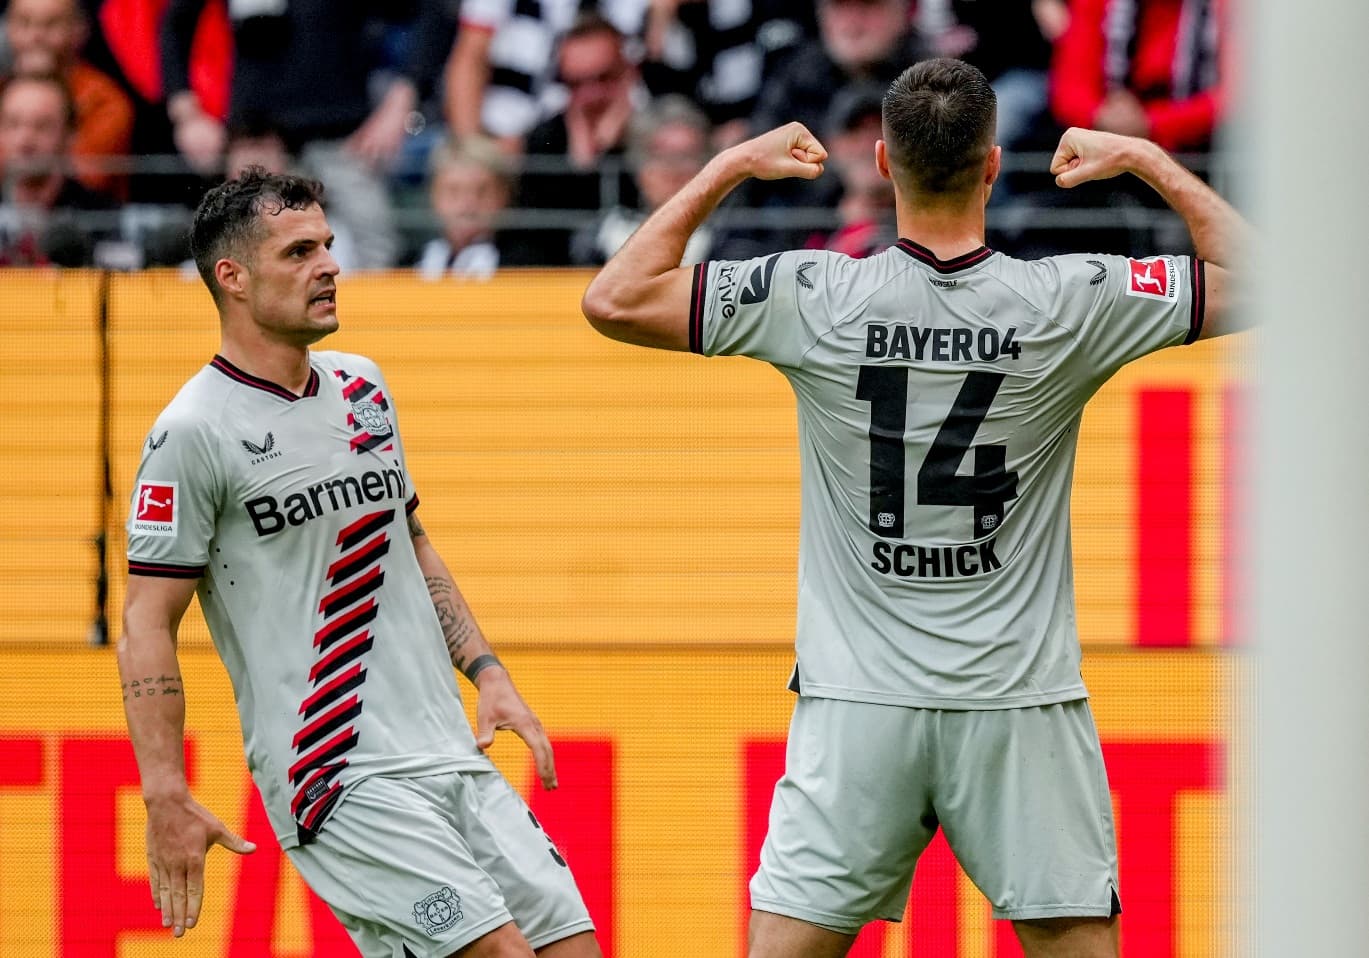 Európa-liga: Kényelmes helyzetben a Leverkusen, kiélezett csata várható Bergamóban